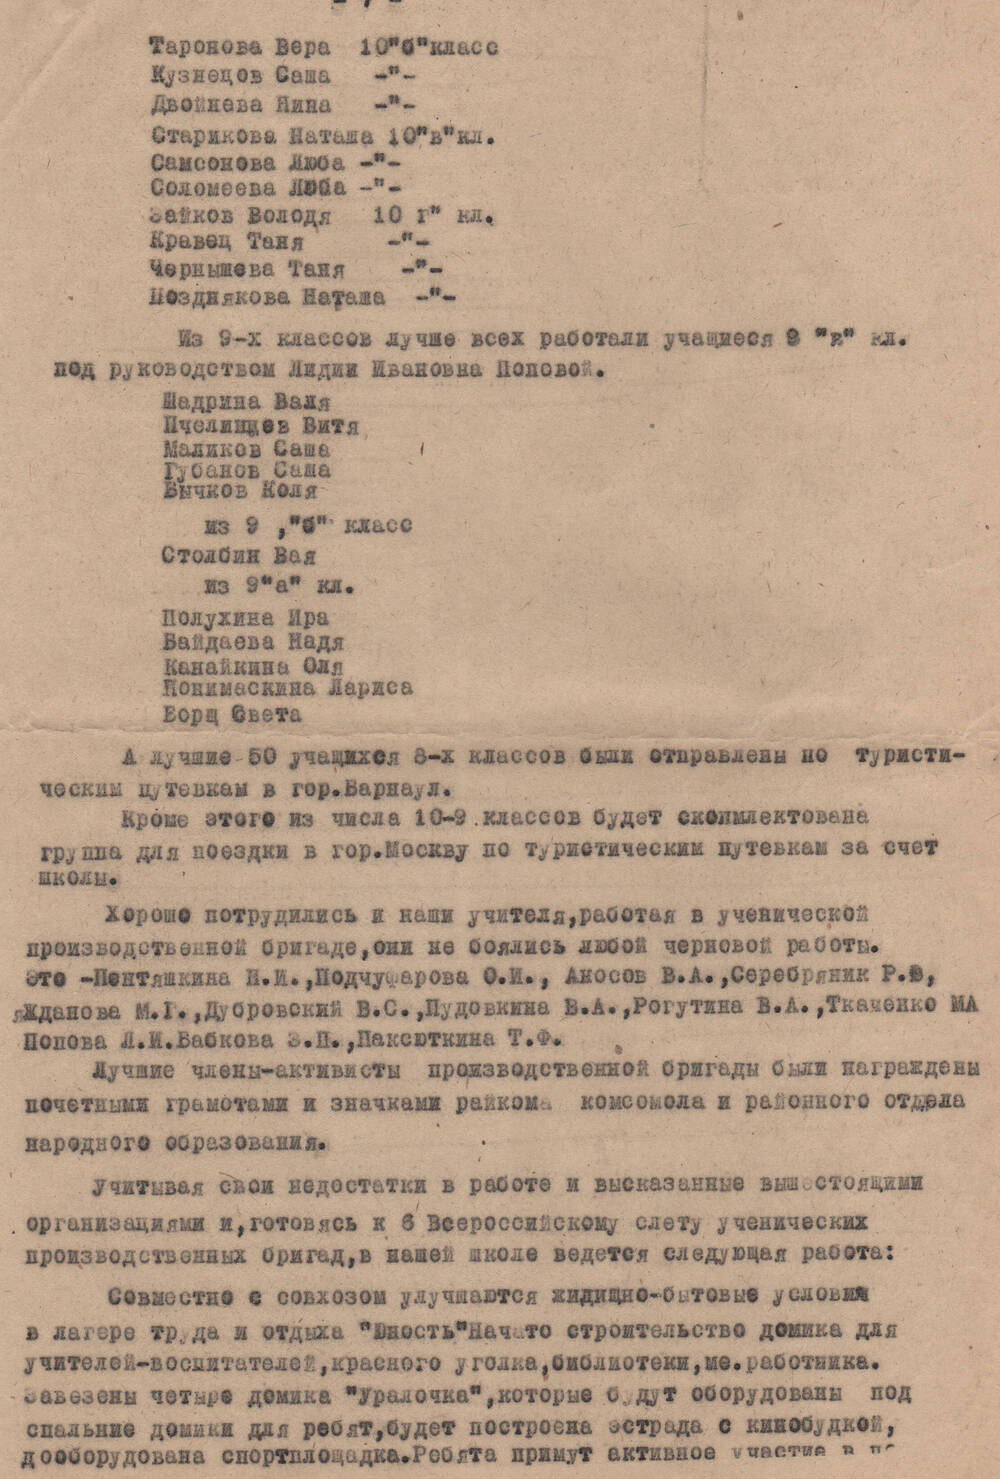 Доклад Об итогах работы ученической производственной бригады за 1974-1975 гг.